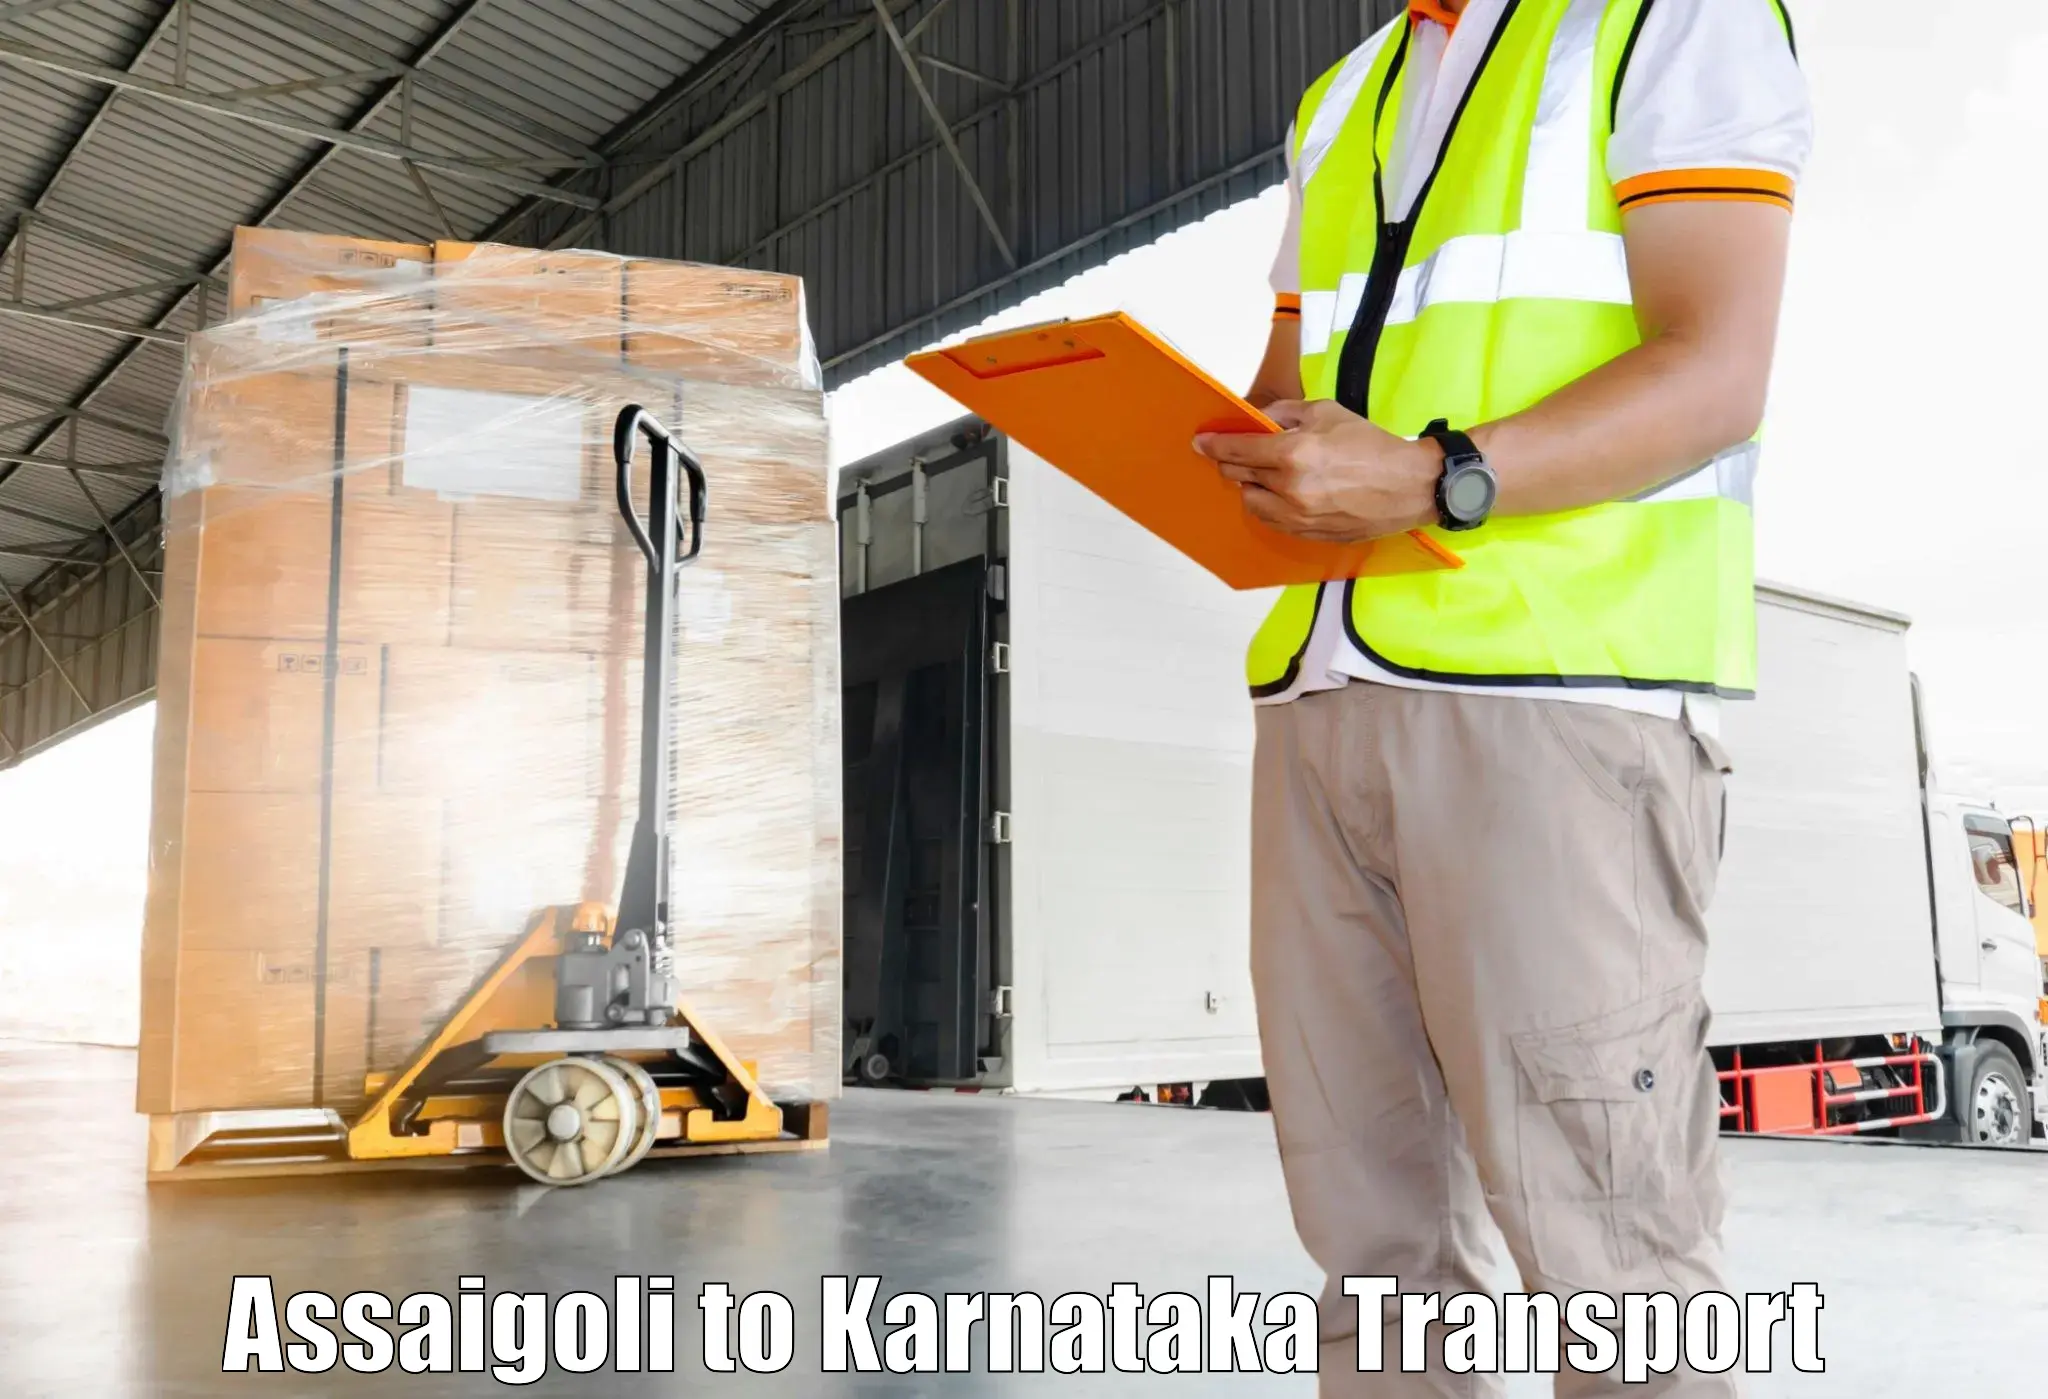 Road transport services Assaigoli to Assaigoli